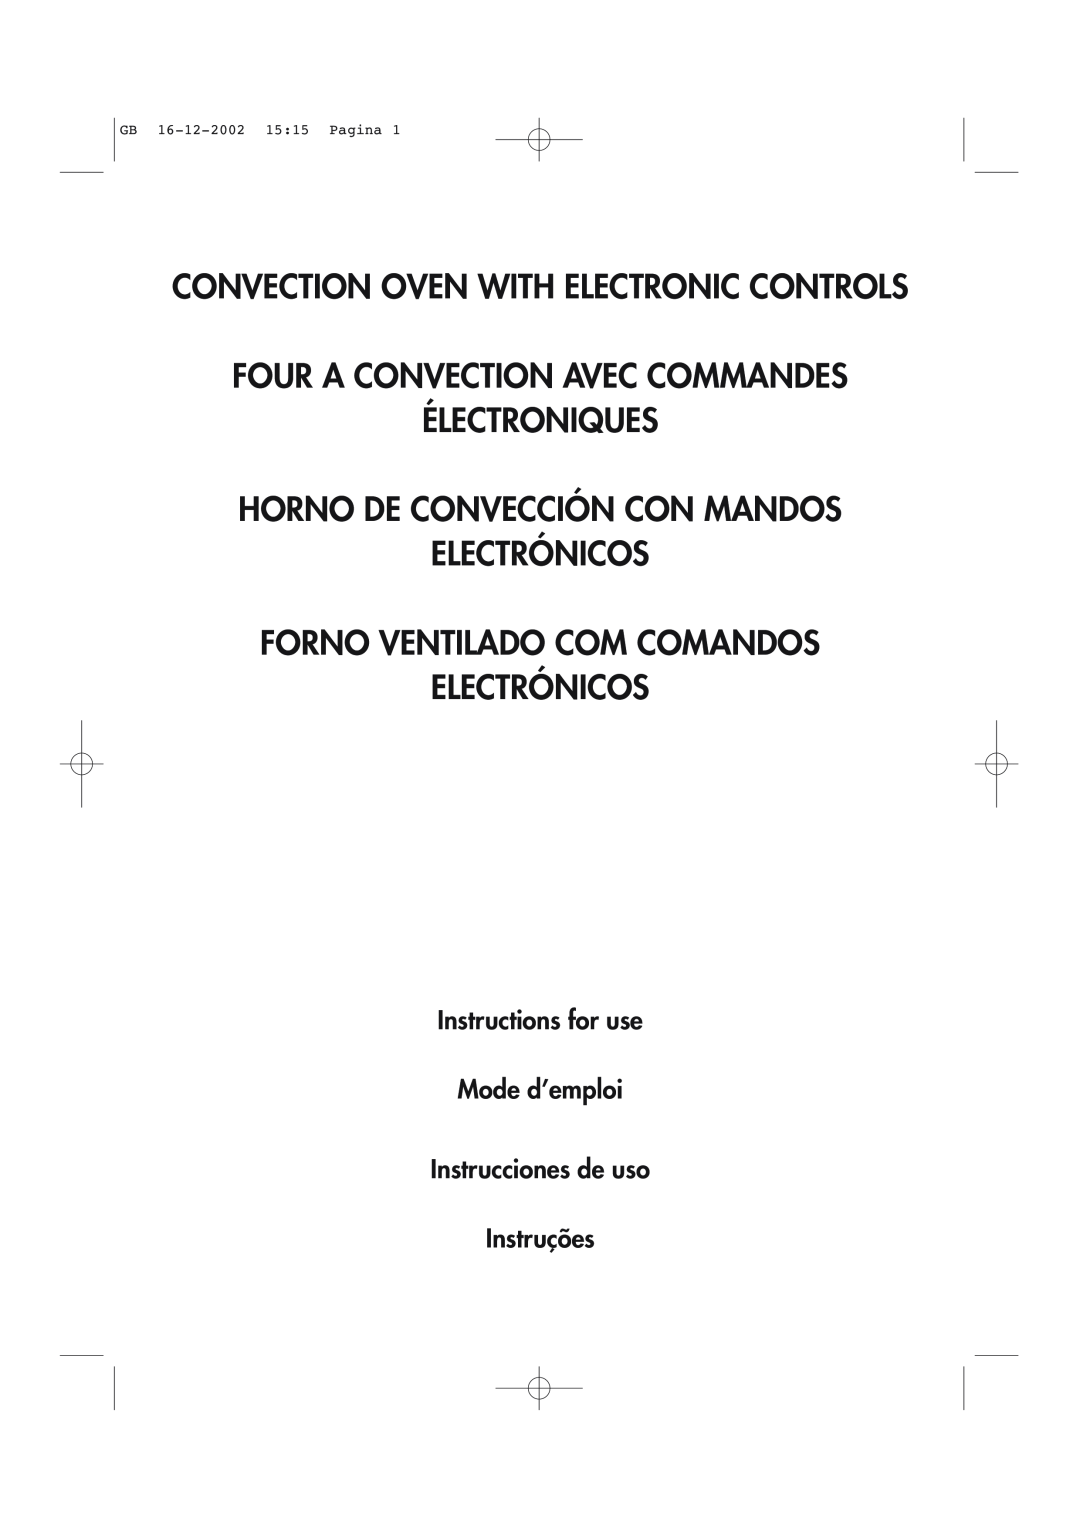 DeLonghi AD1099 manual Convection Oven With Electronic Controls, Four A Convection Avec Commandes Électroniques 